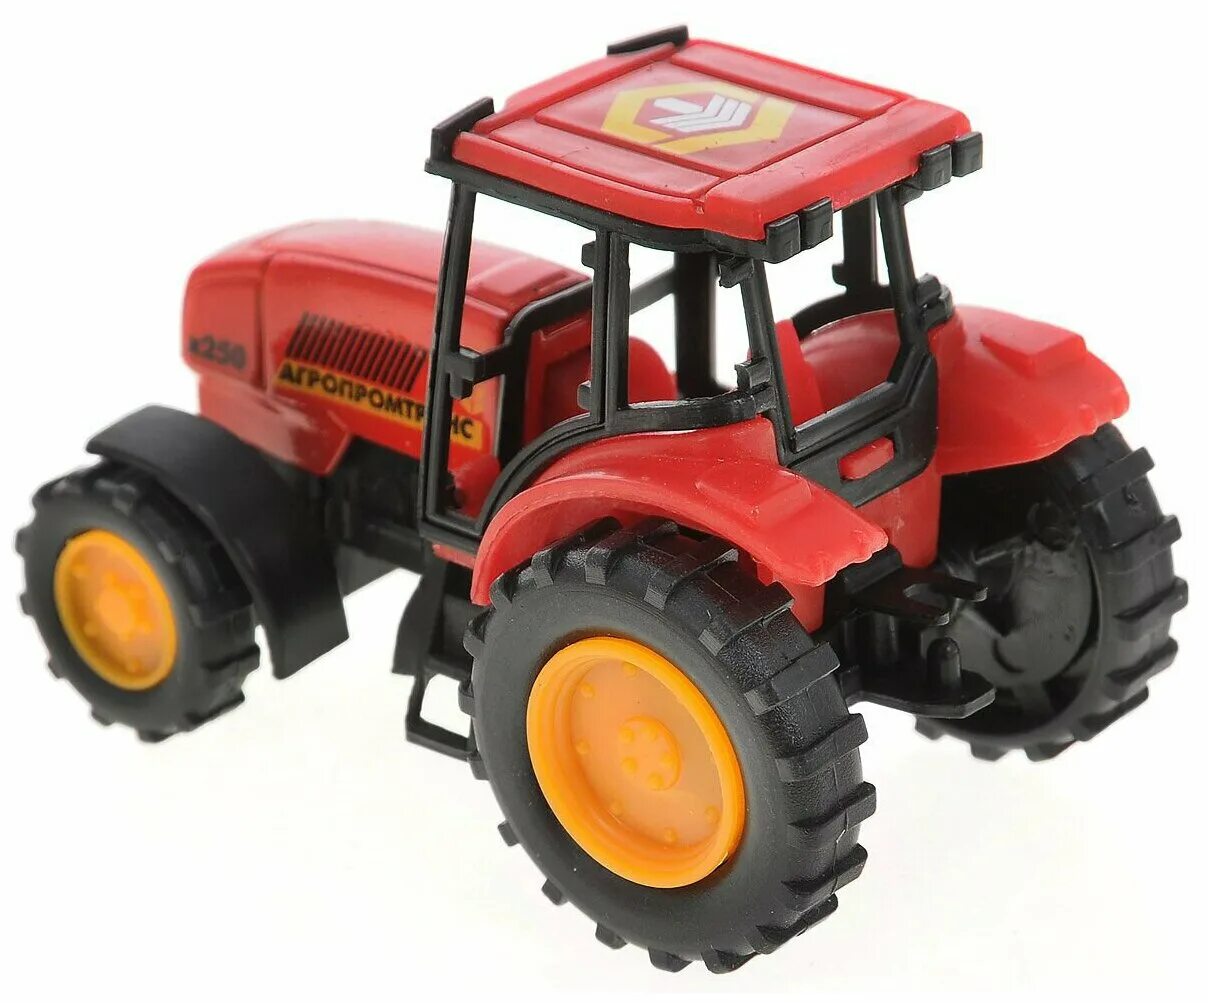 Трактор купить цена недорого. Трактор Технопарк Агропромтранс (20119-r) 7 см. Игрушки трактор красный Тайо. Игрушка трактор tractor красный. Игрушечные модели тракторов.